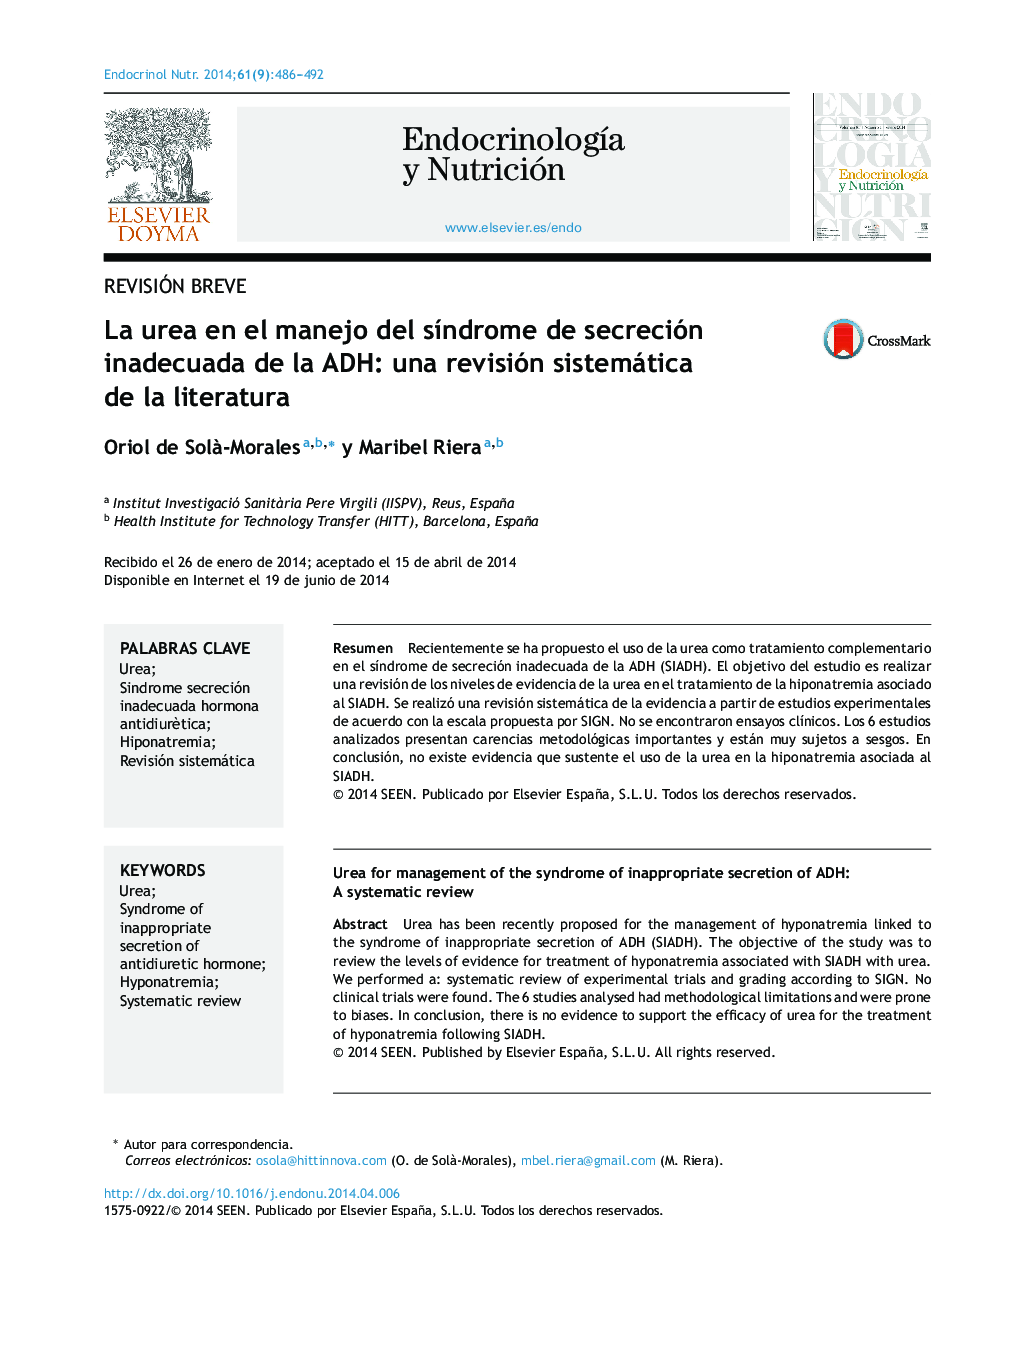 La urea en el manejo del síndrome de secreción inadecuada de la ADH: una revisión sistemática de la literatura